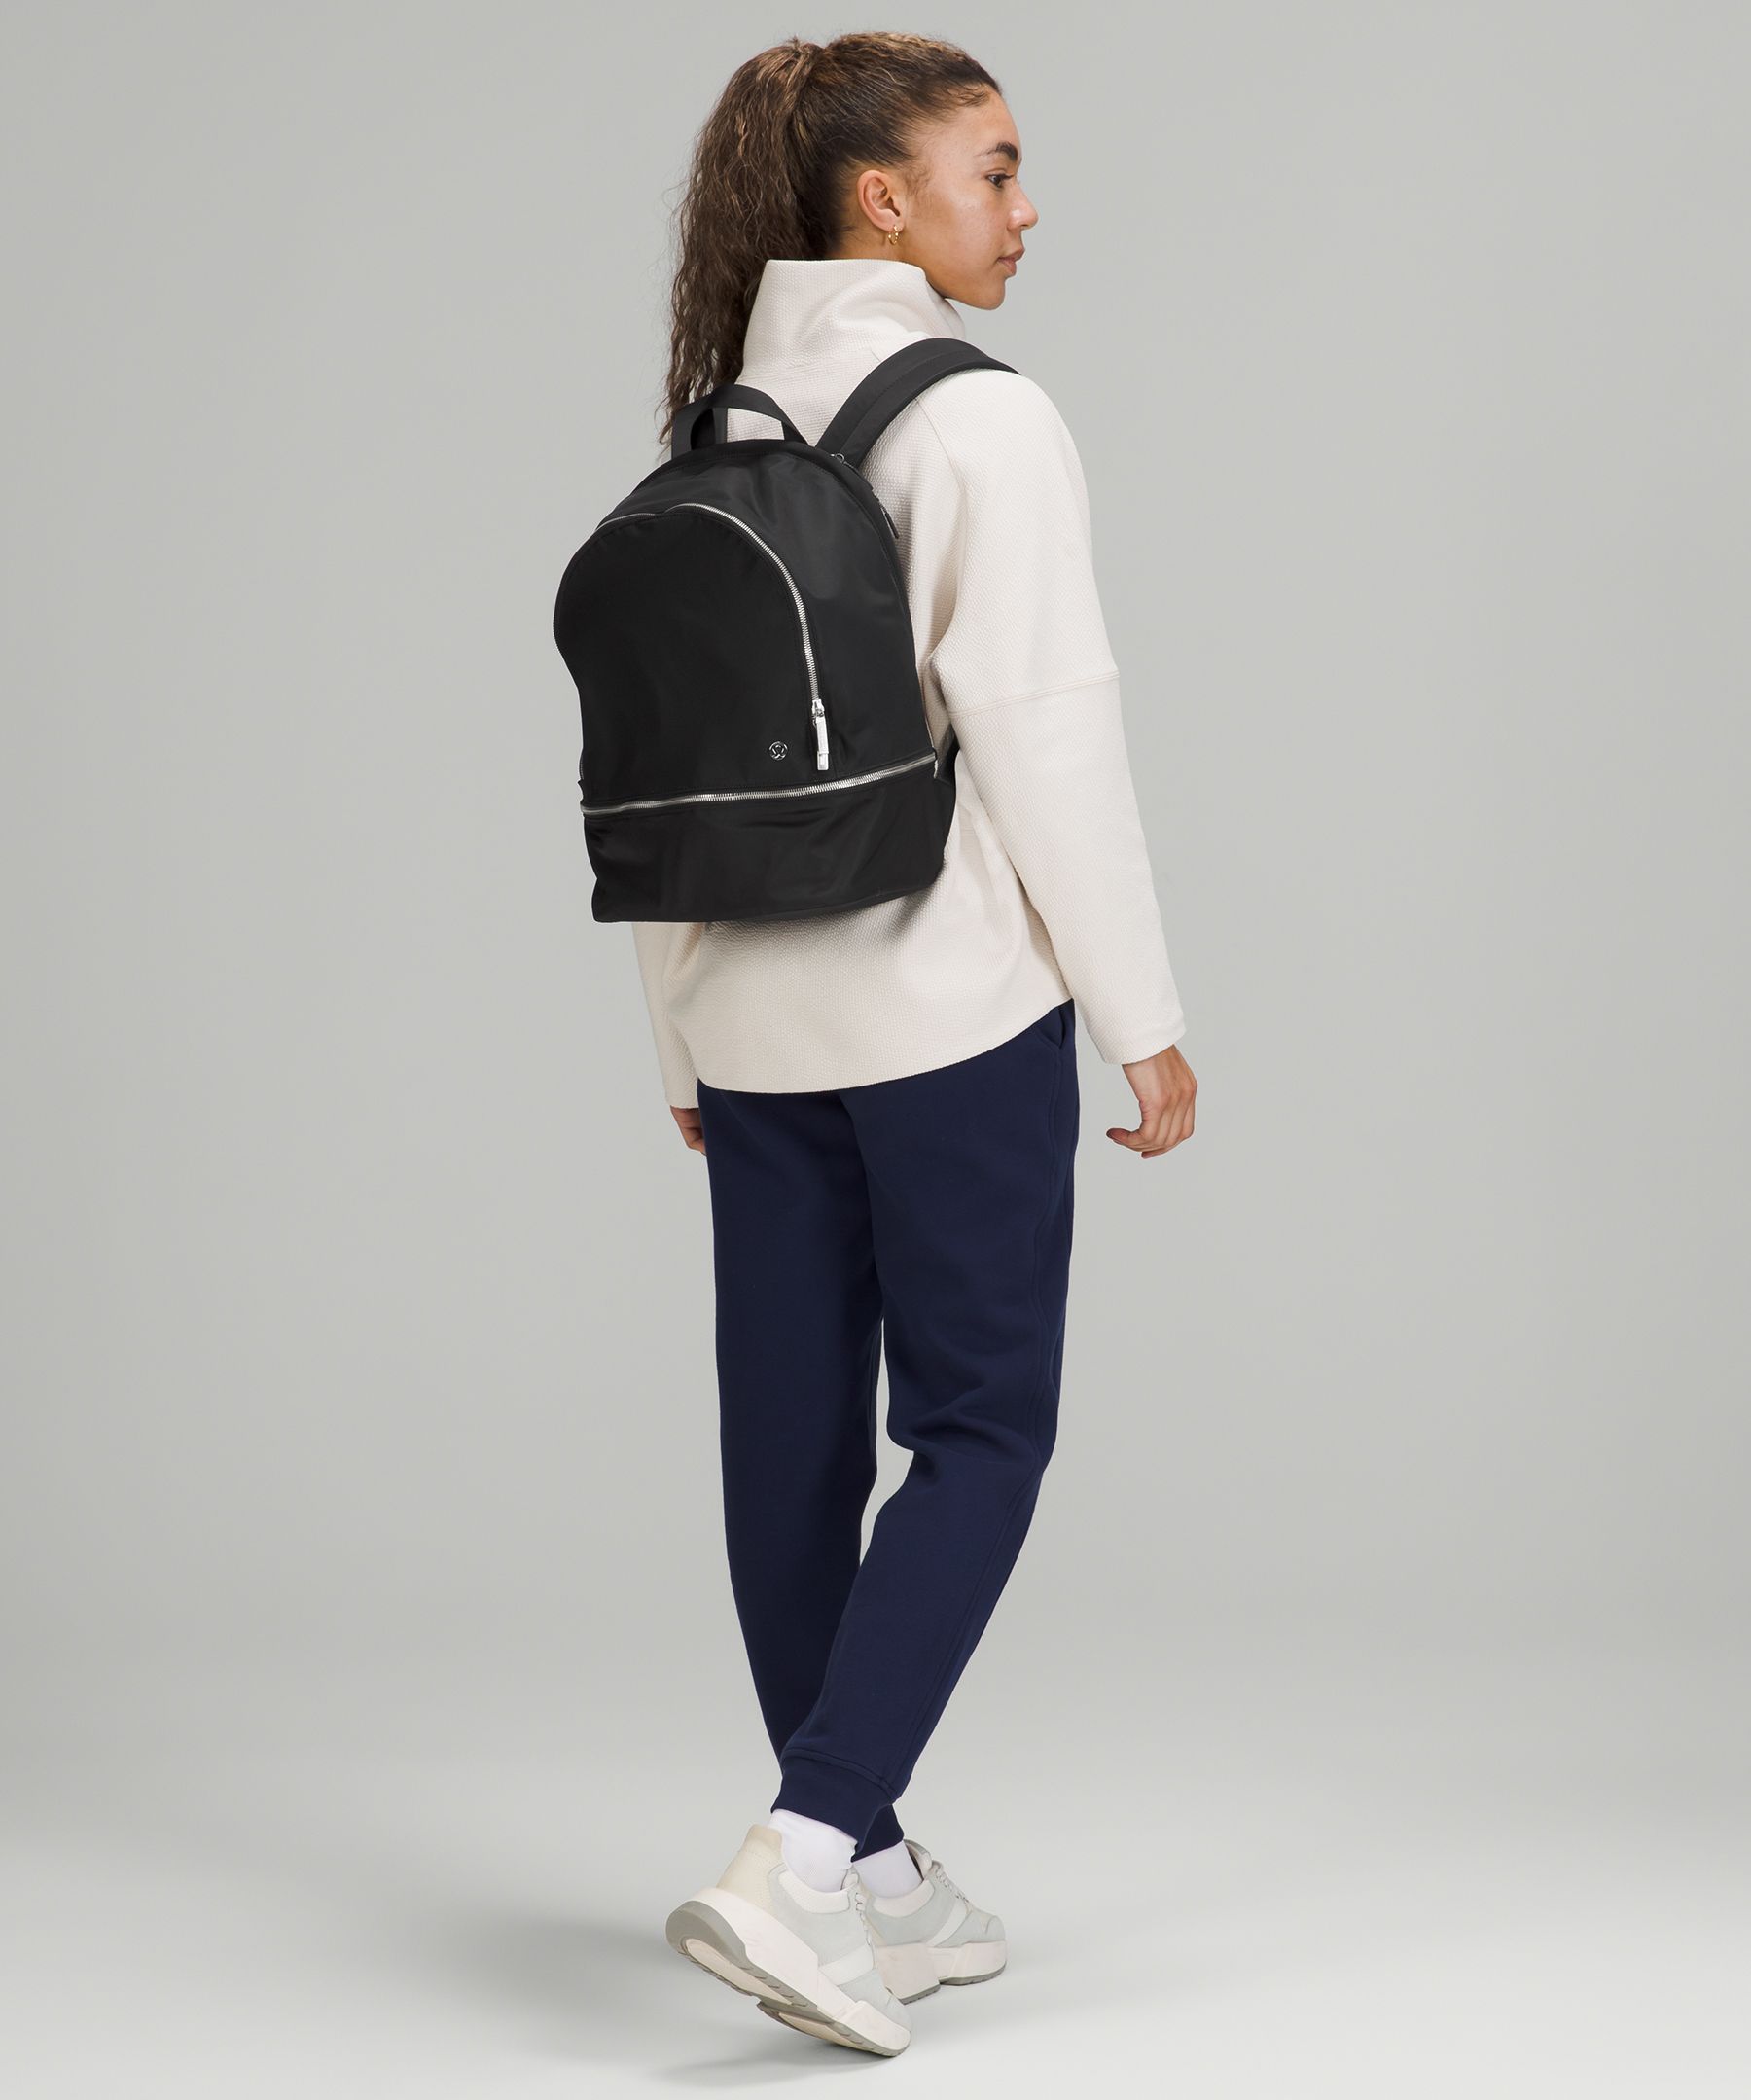 lululemon girls backpack